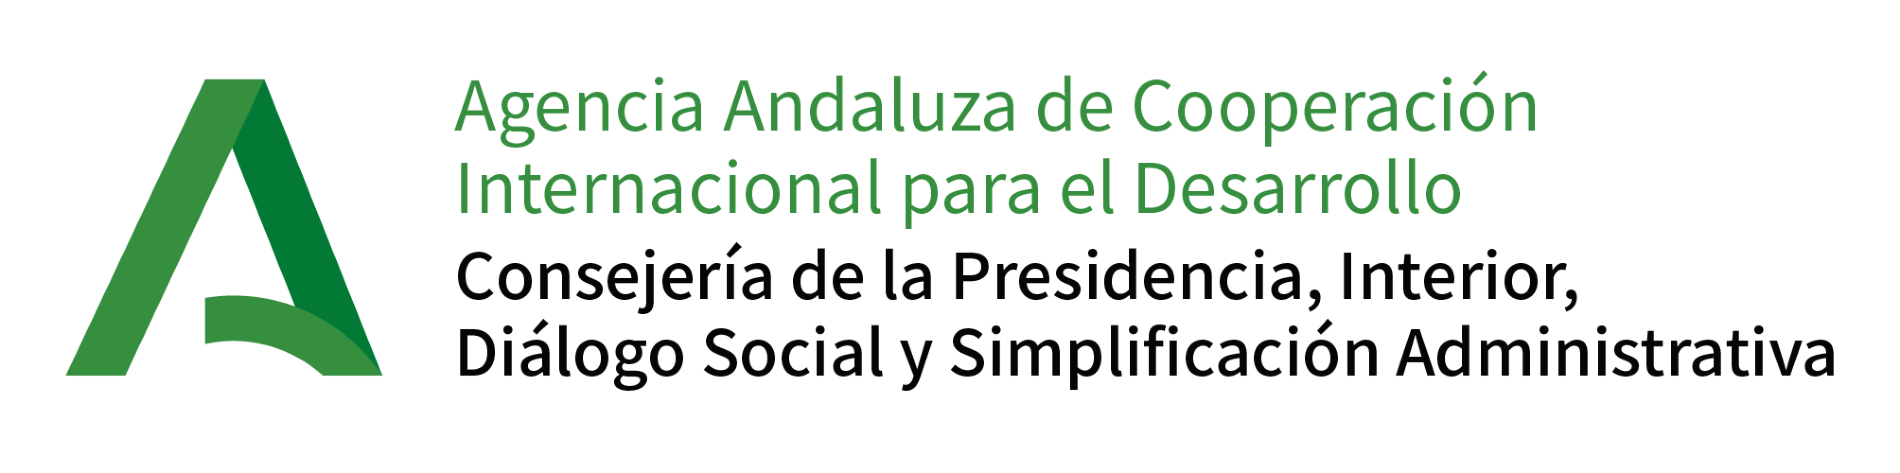 Agencia Andaluza de Cooperación Internacional para el Desarrollo